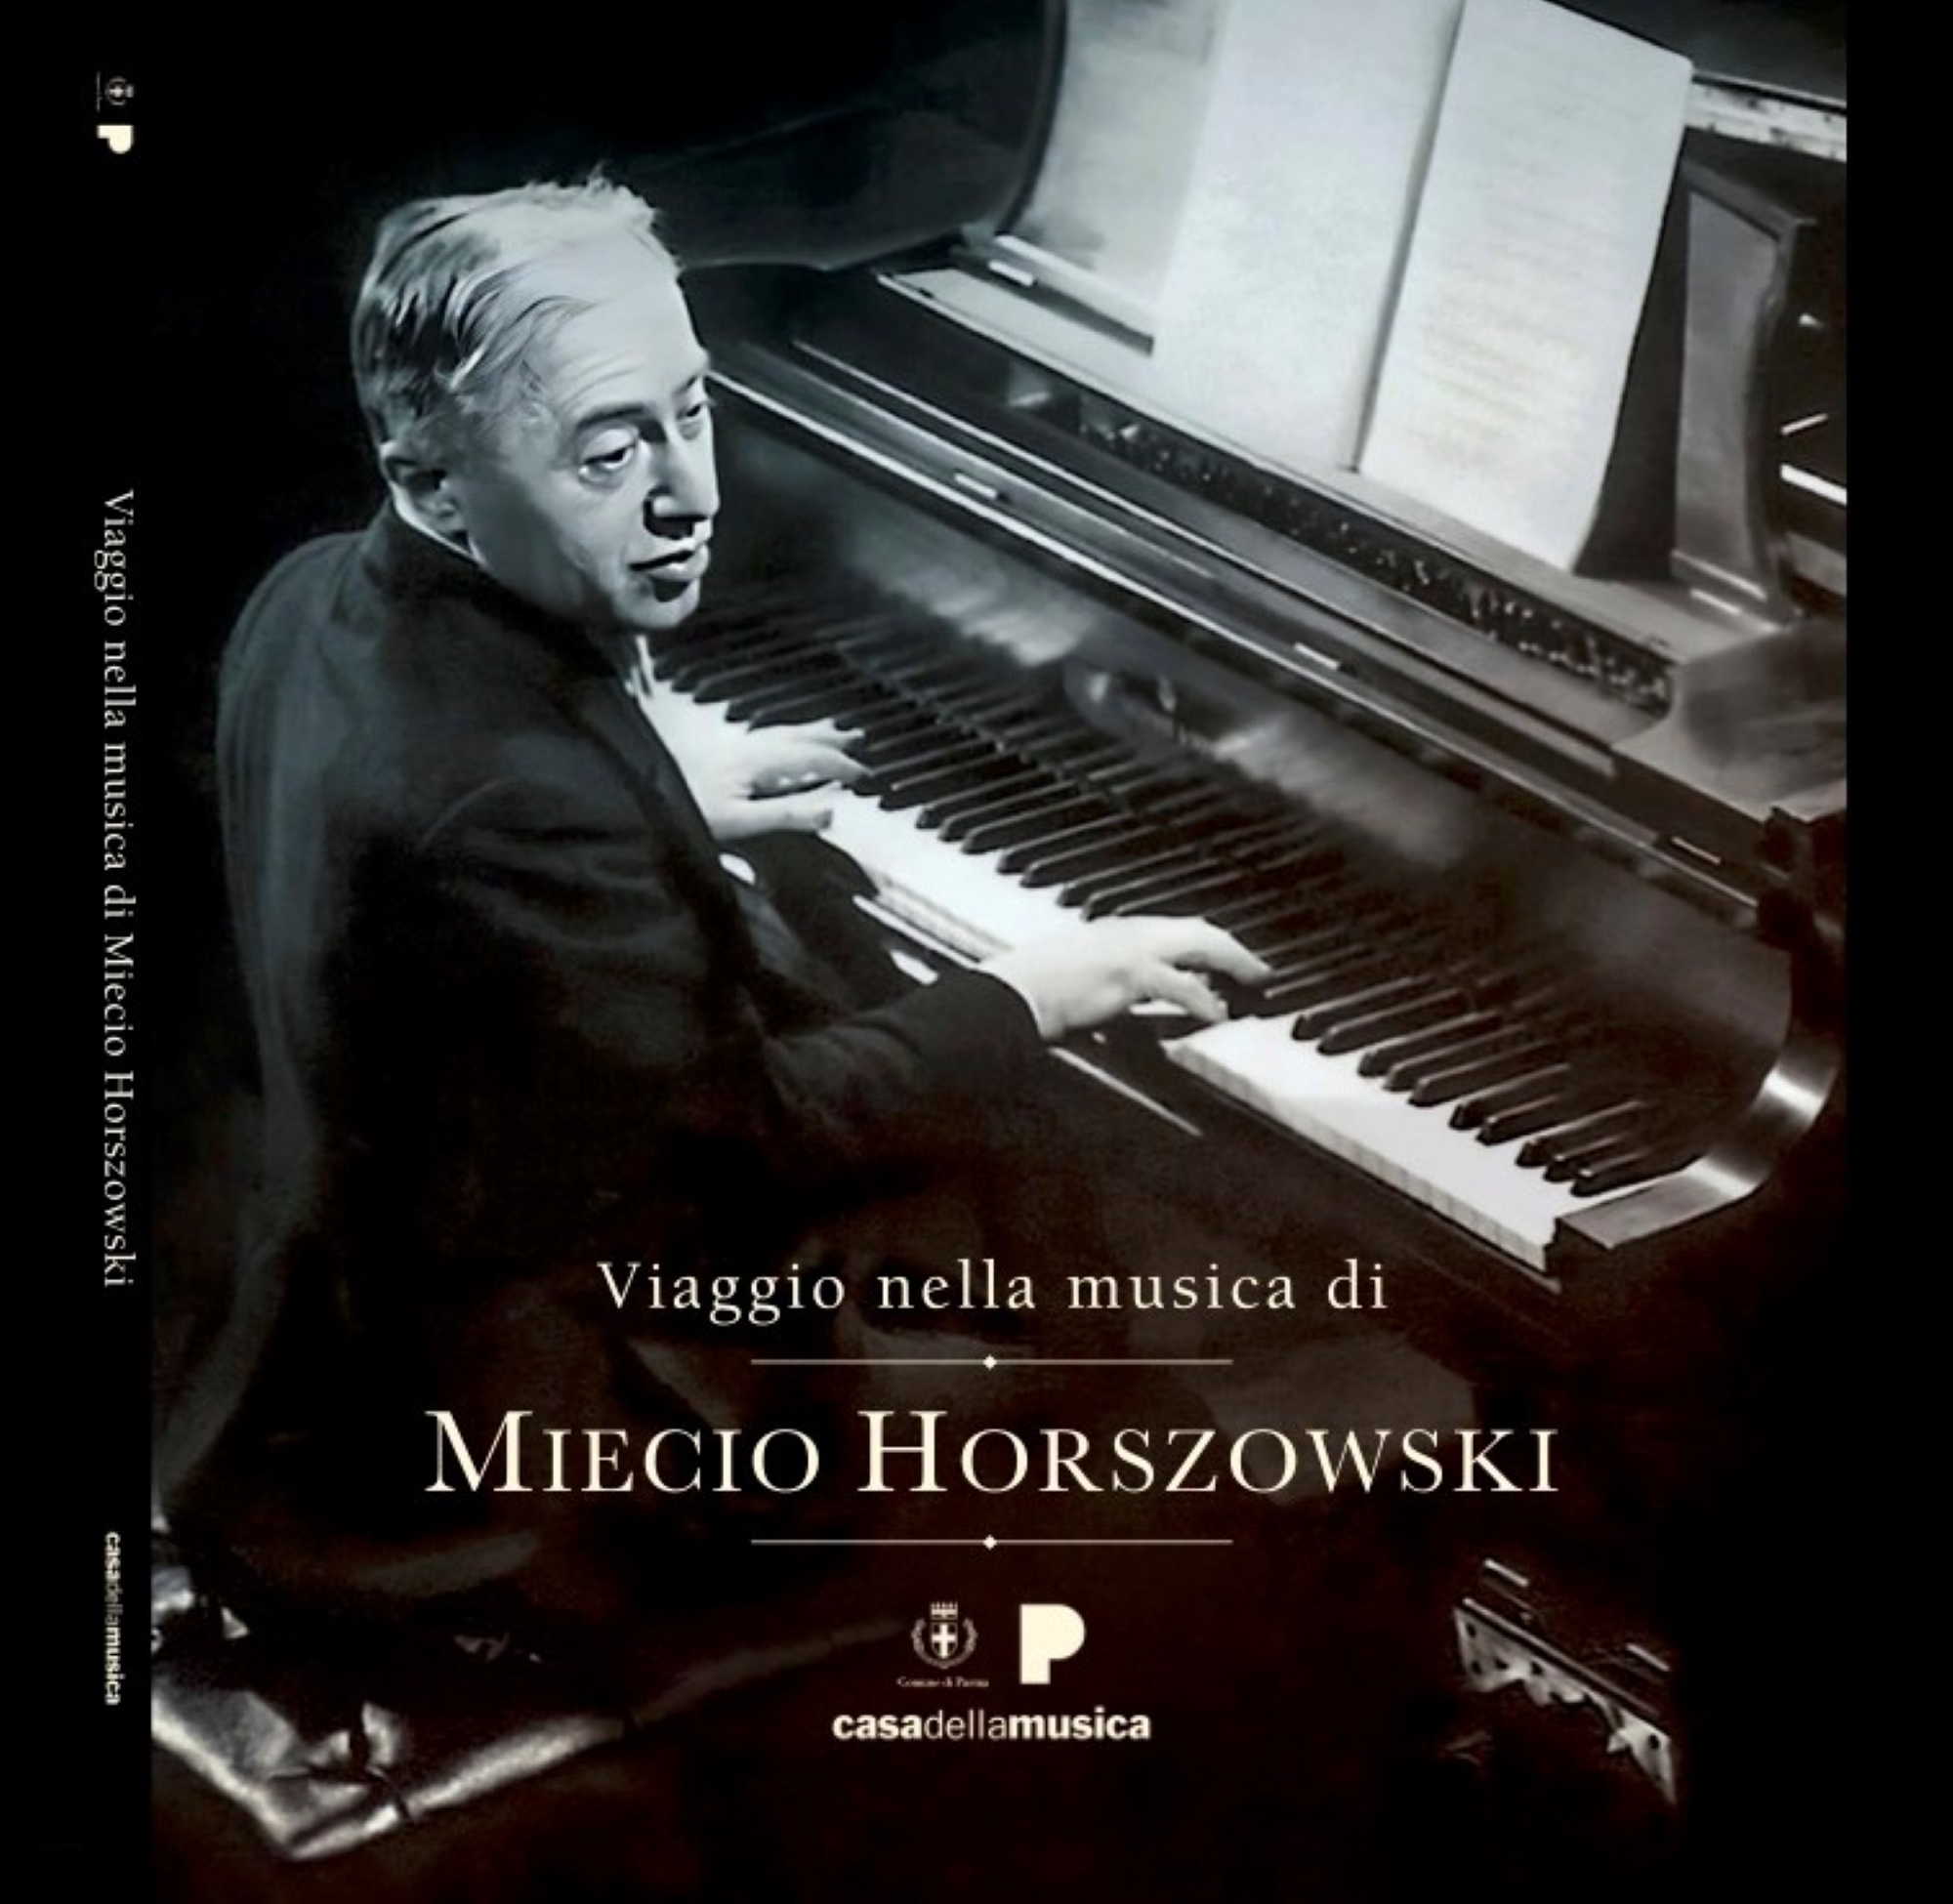 Copertina catalogo mostra Viaggio nella musica di Miecio Horszowski